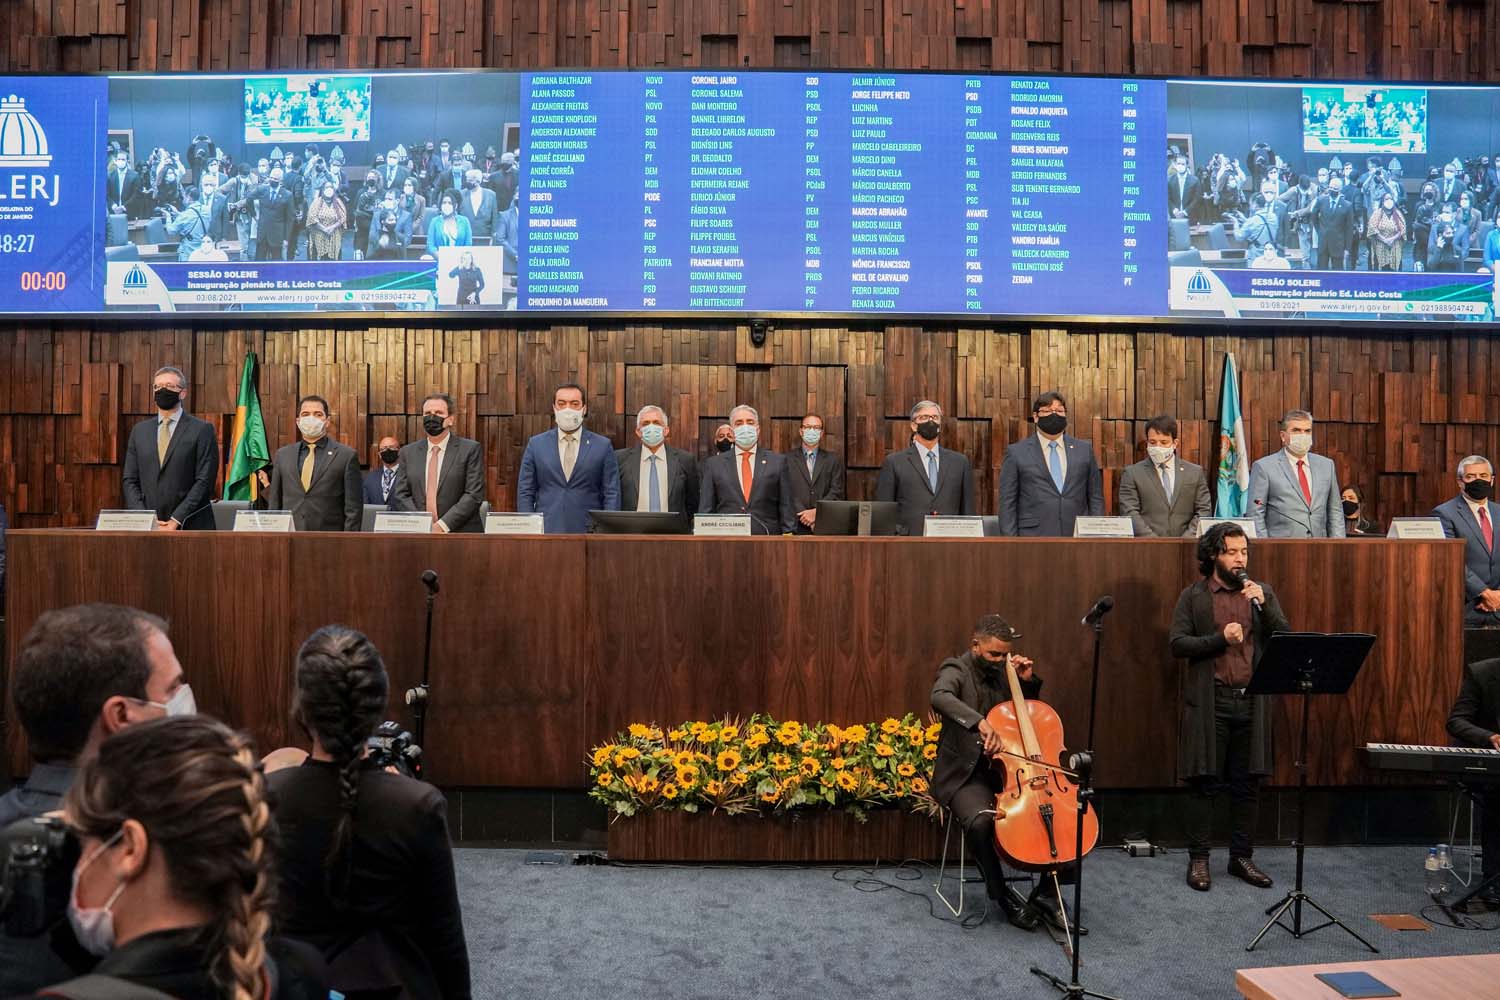 Novo plenário da Alerj é inaugurado com discursos  de recuperação econômica e união entre os poderes